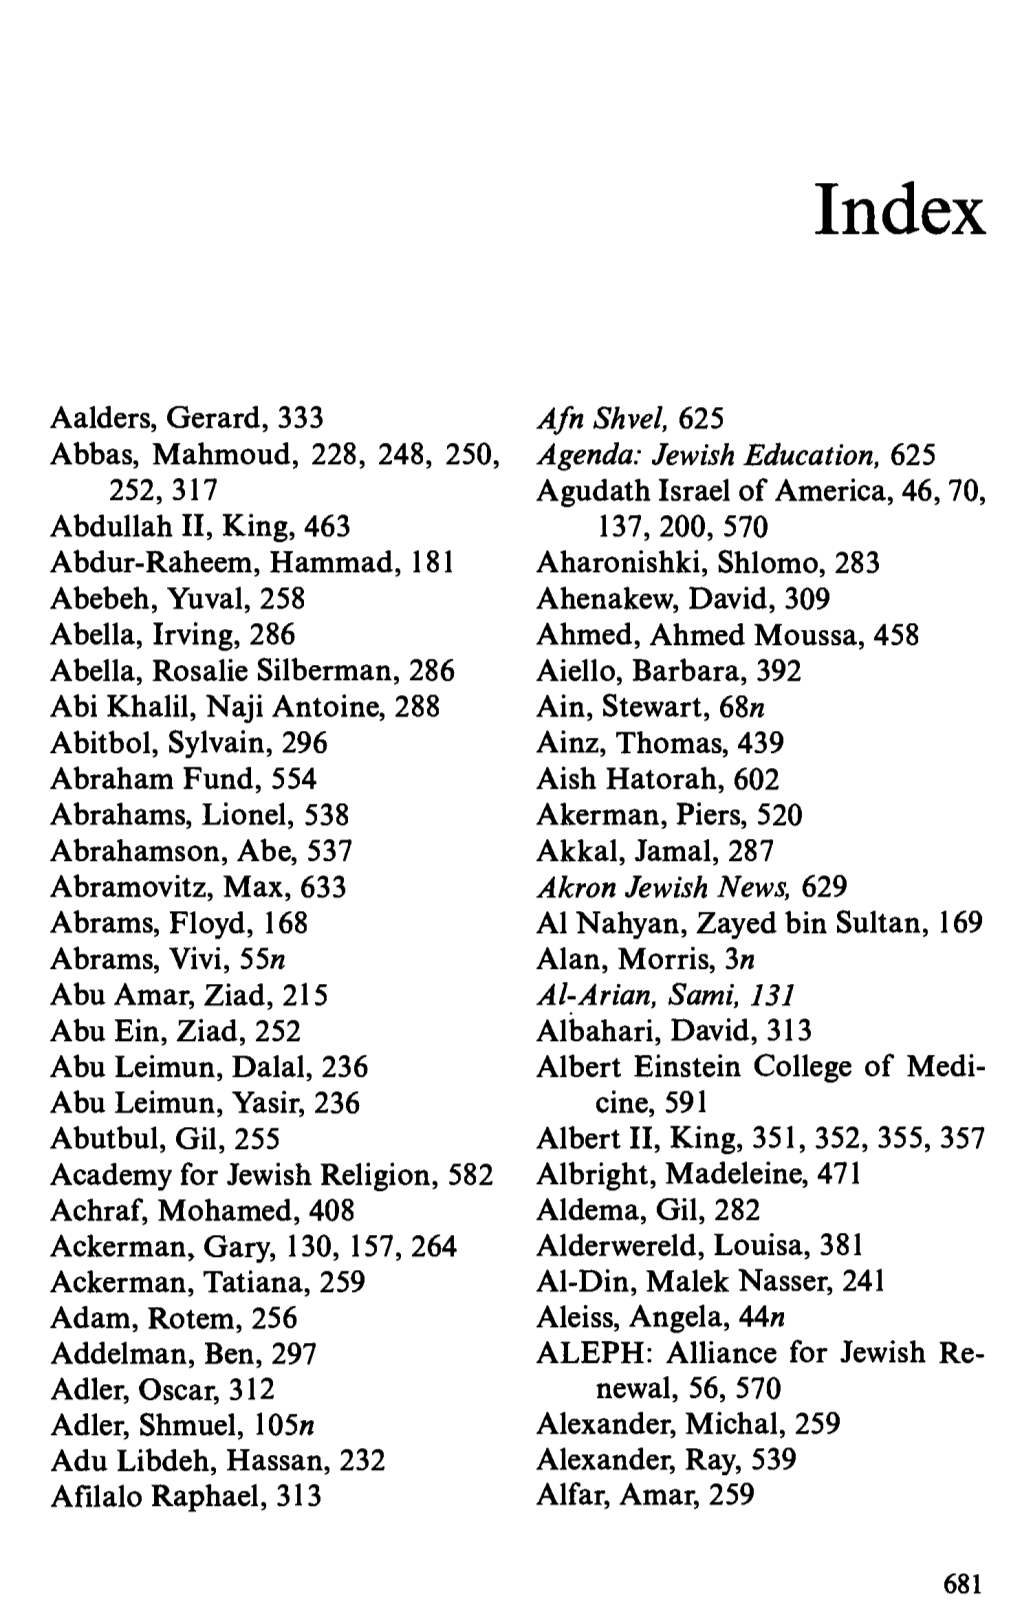 Aalders, Gerard, 333 Abbas, Mahmoud, 228, 248, 250, 252,317 Abdullah II, King, 463 Abdur-Raheem, Hammad, 181 Abebeh, Yuval